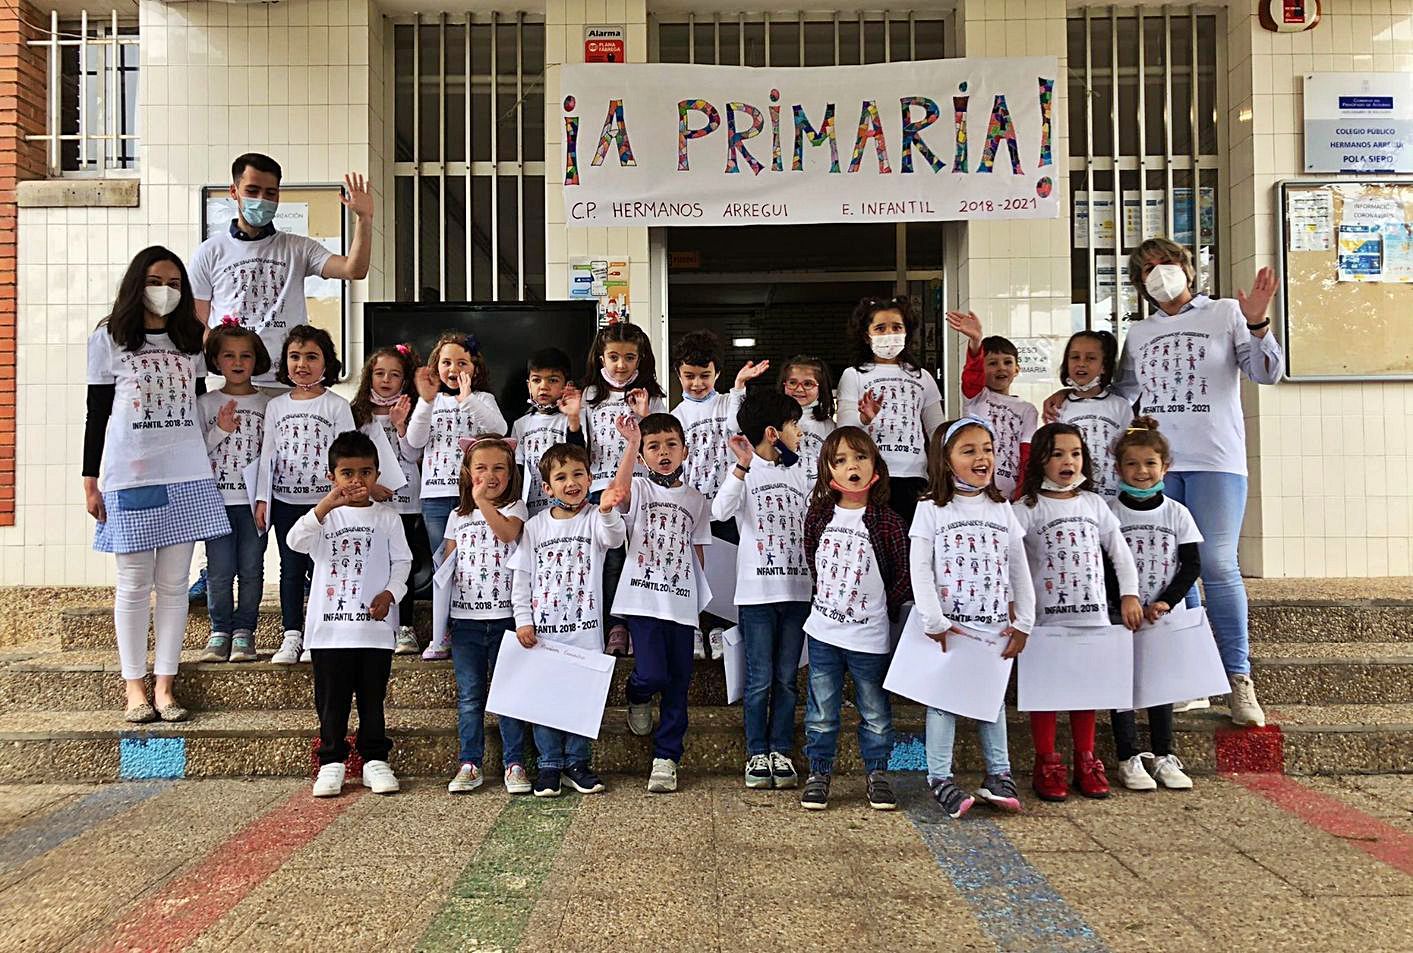 Alumnos del colegio Hermanos Arregui, de Pola de Siero. | Inés Gago